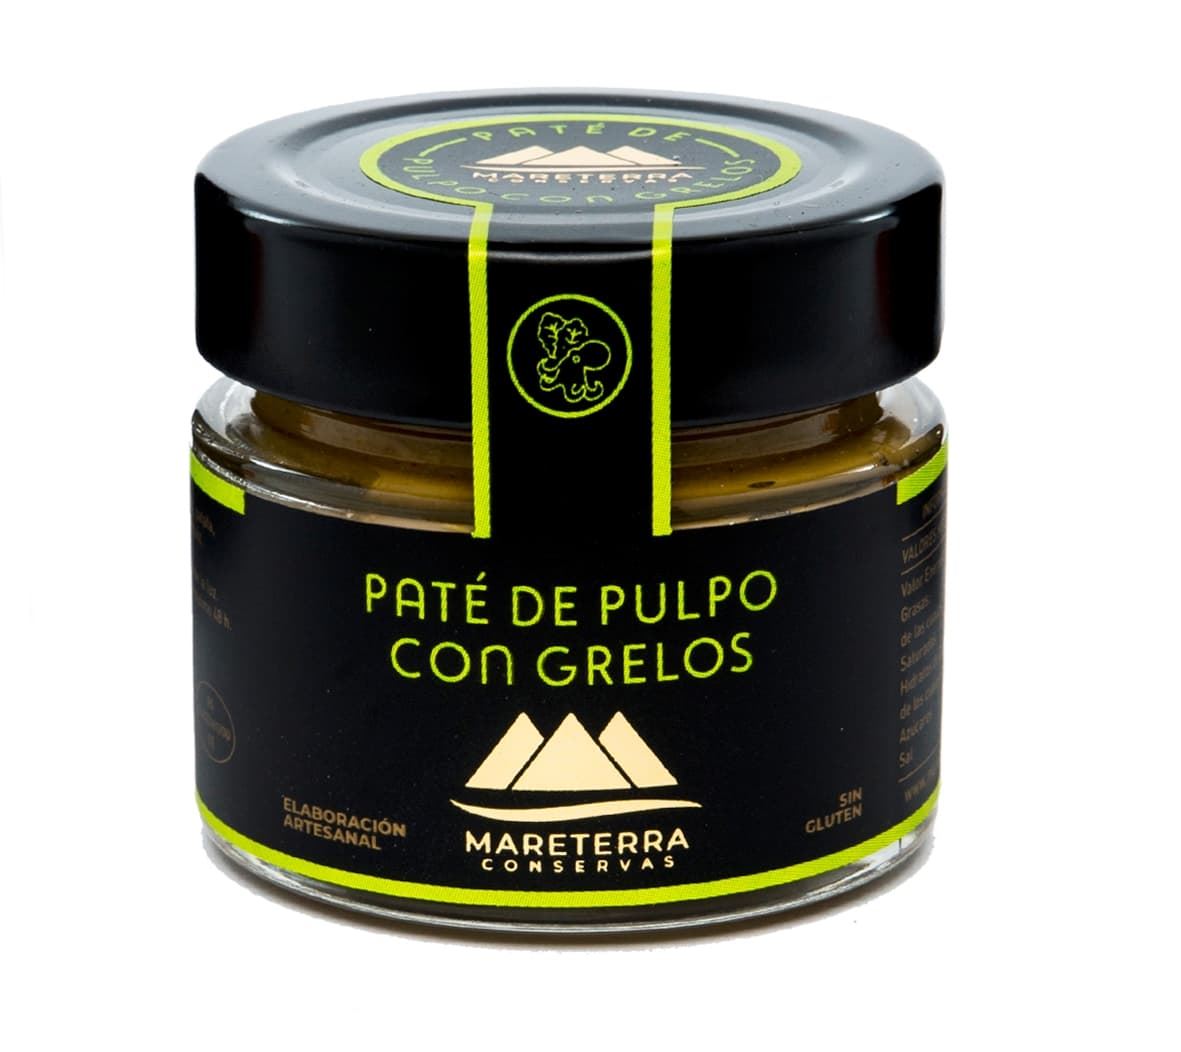 Paté de Pulpo con Grelos Mareterra 94grs - Imagen 1